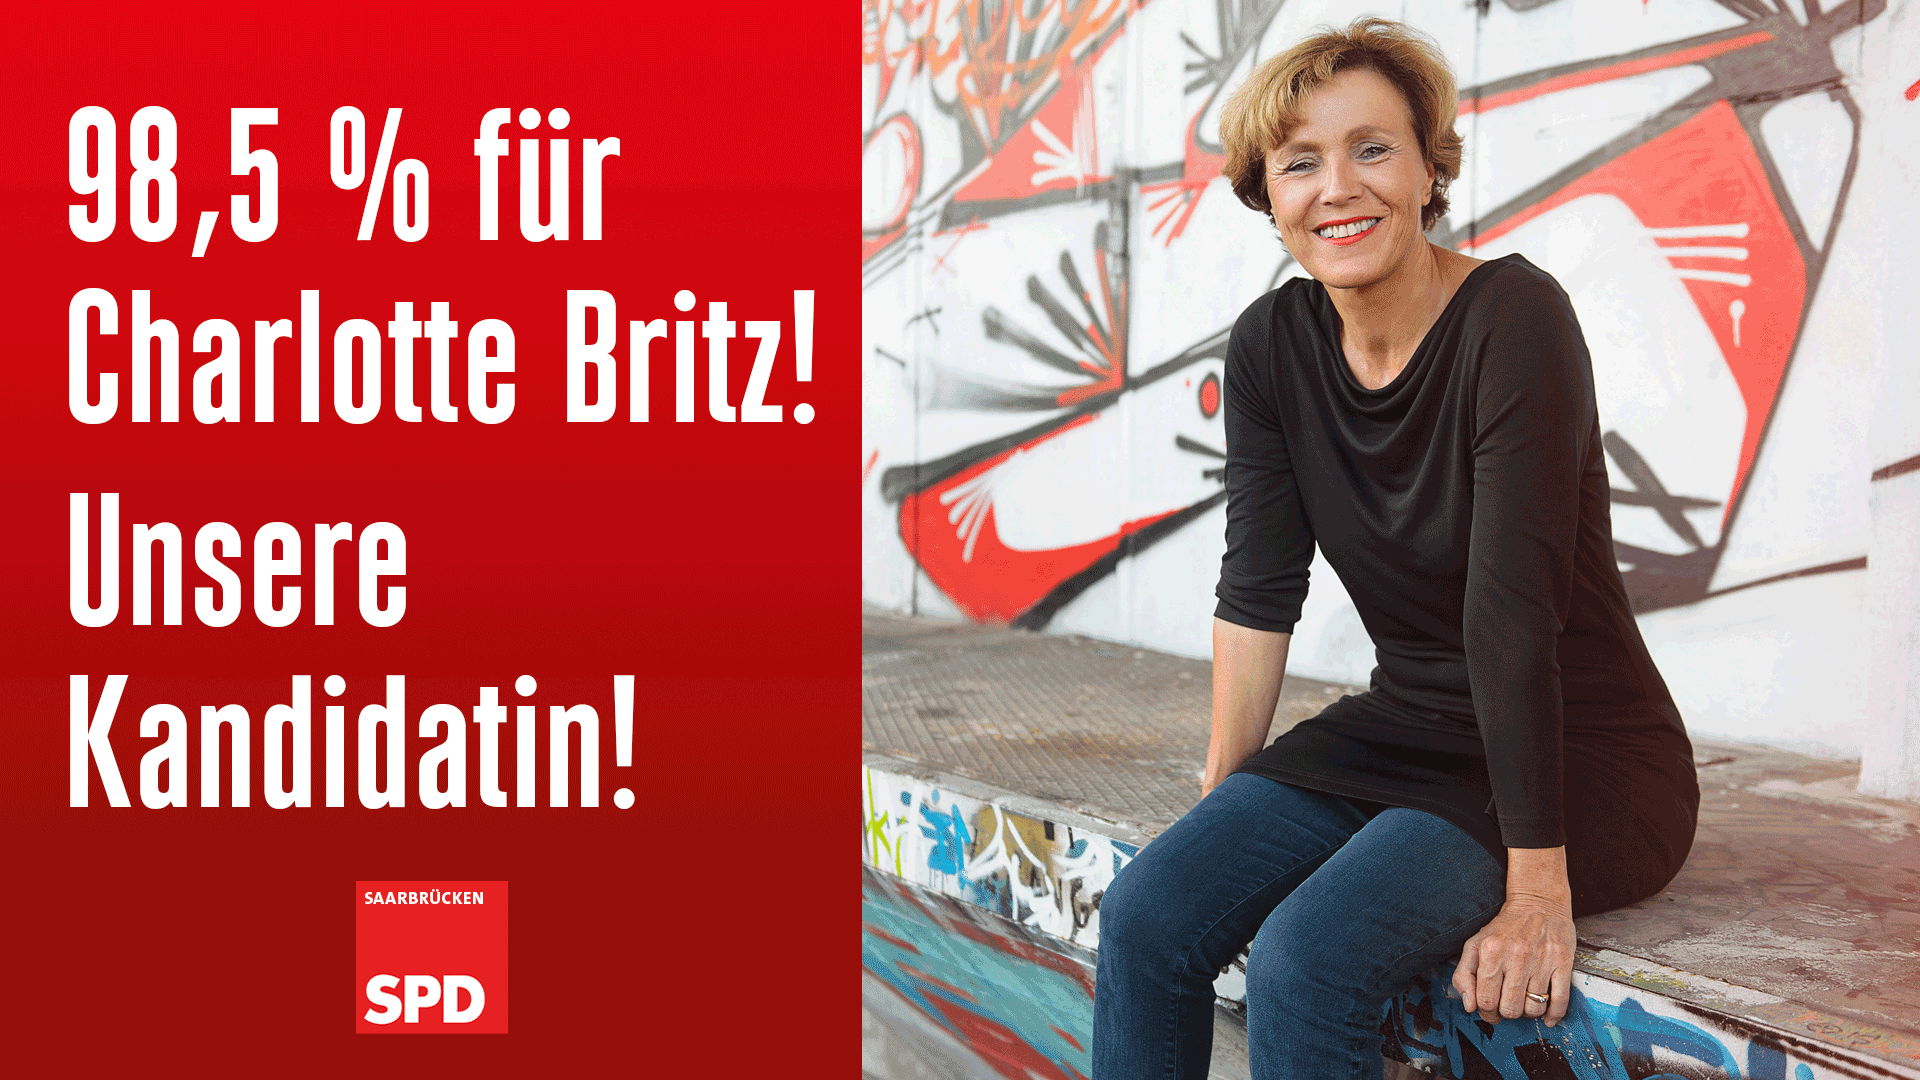 98,5 %! Charlotte Britz geht für die SPD erneut ins Rennen um das Amt der Oberbürgermeisterin der Landeshauptstadt Saarbrücken